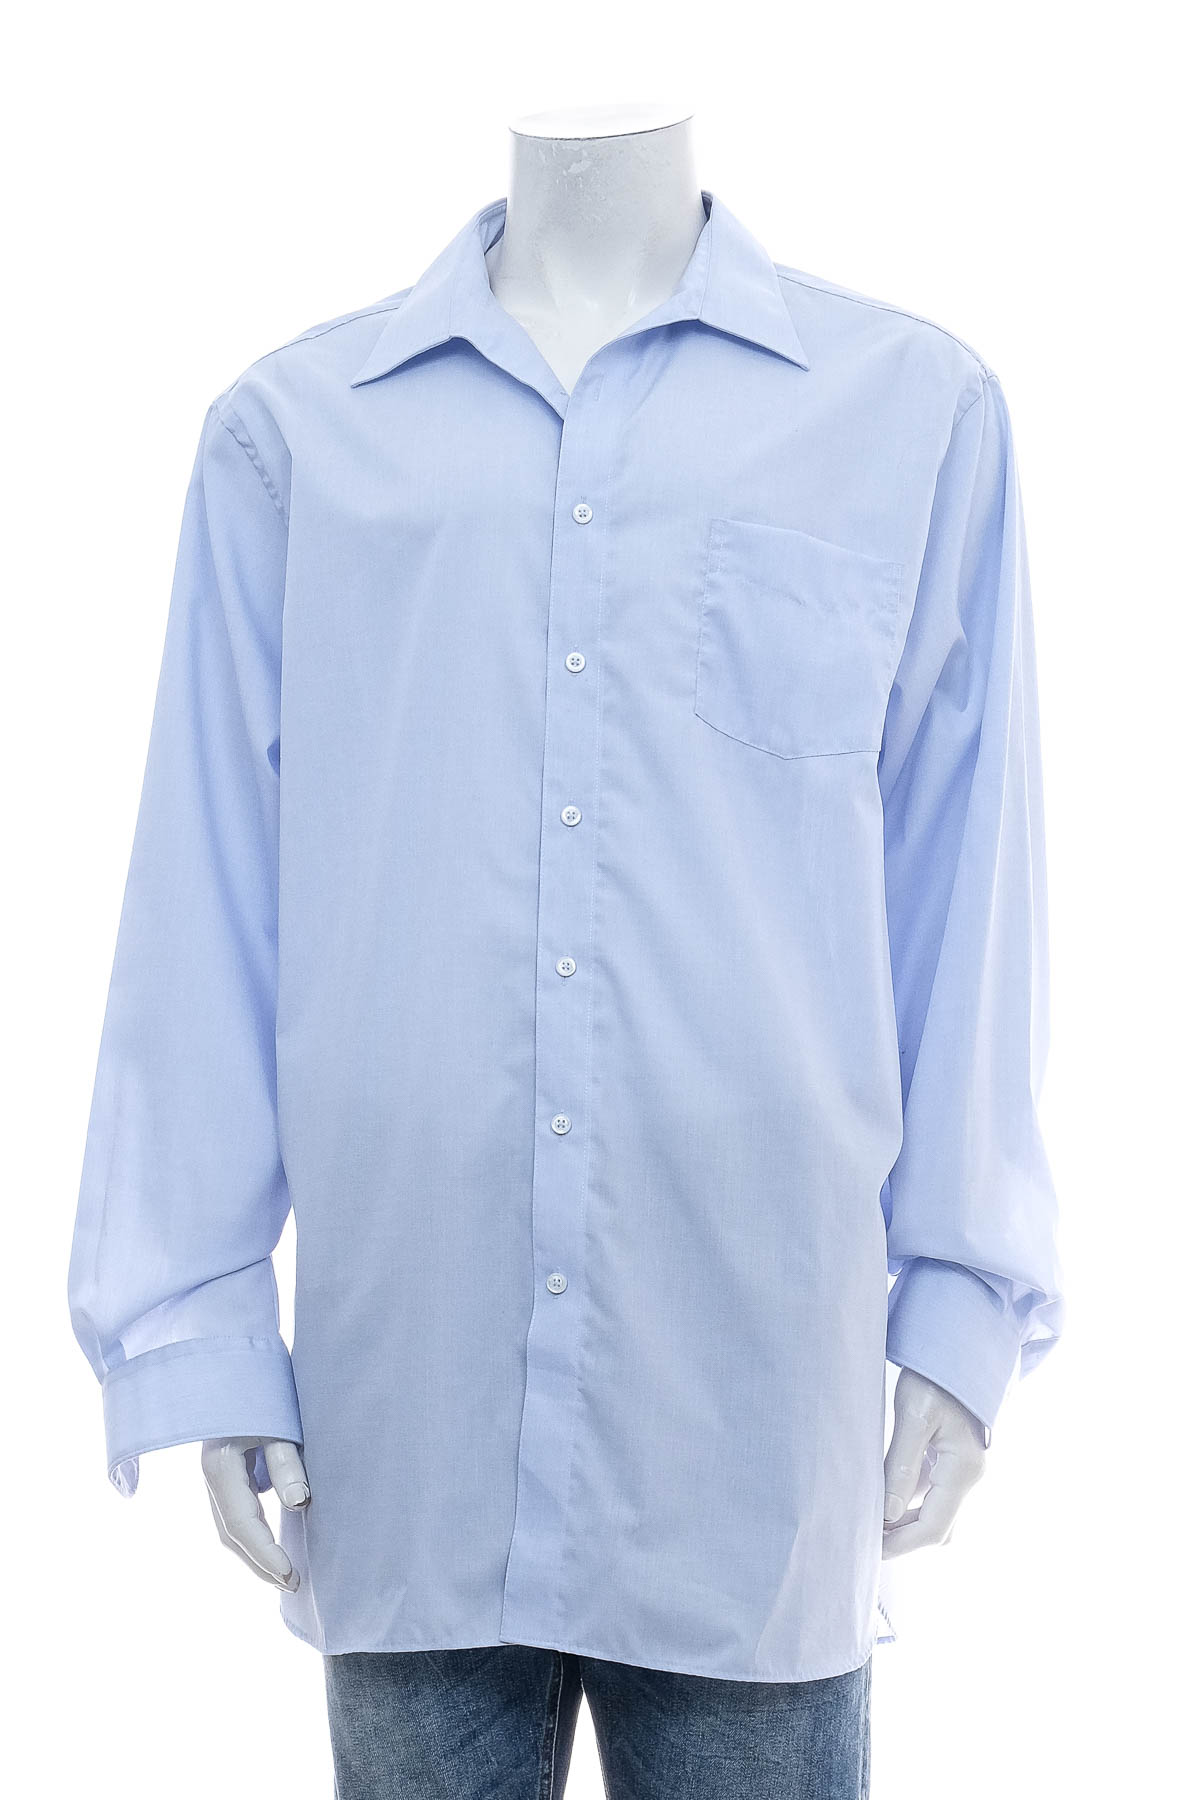 Ανδρικό πουκάμισο - Walbusch - 0